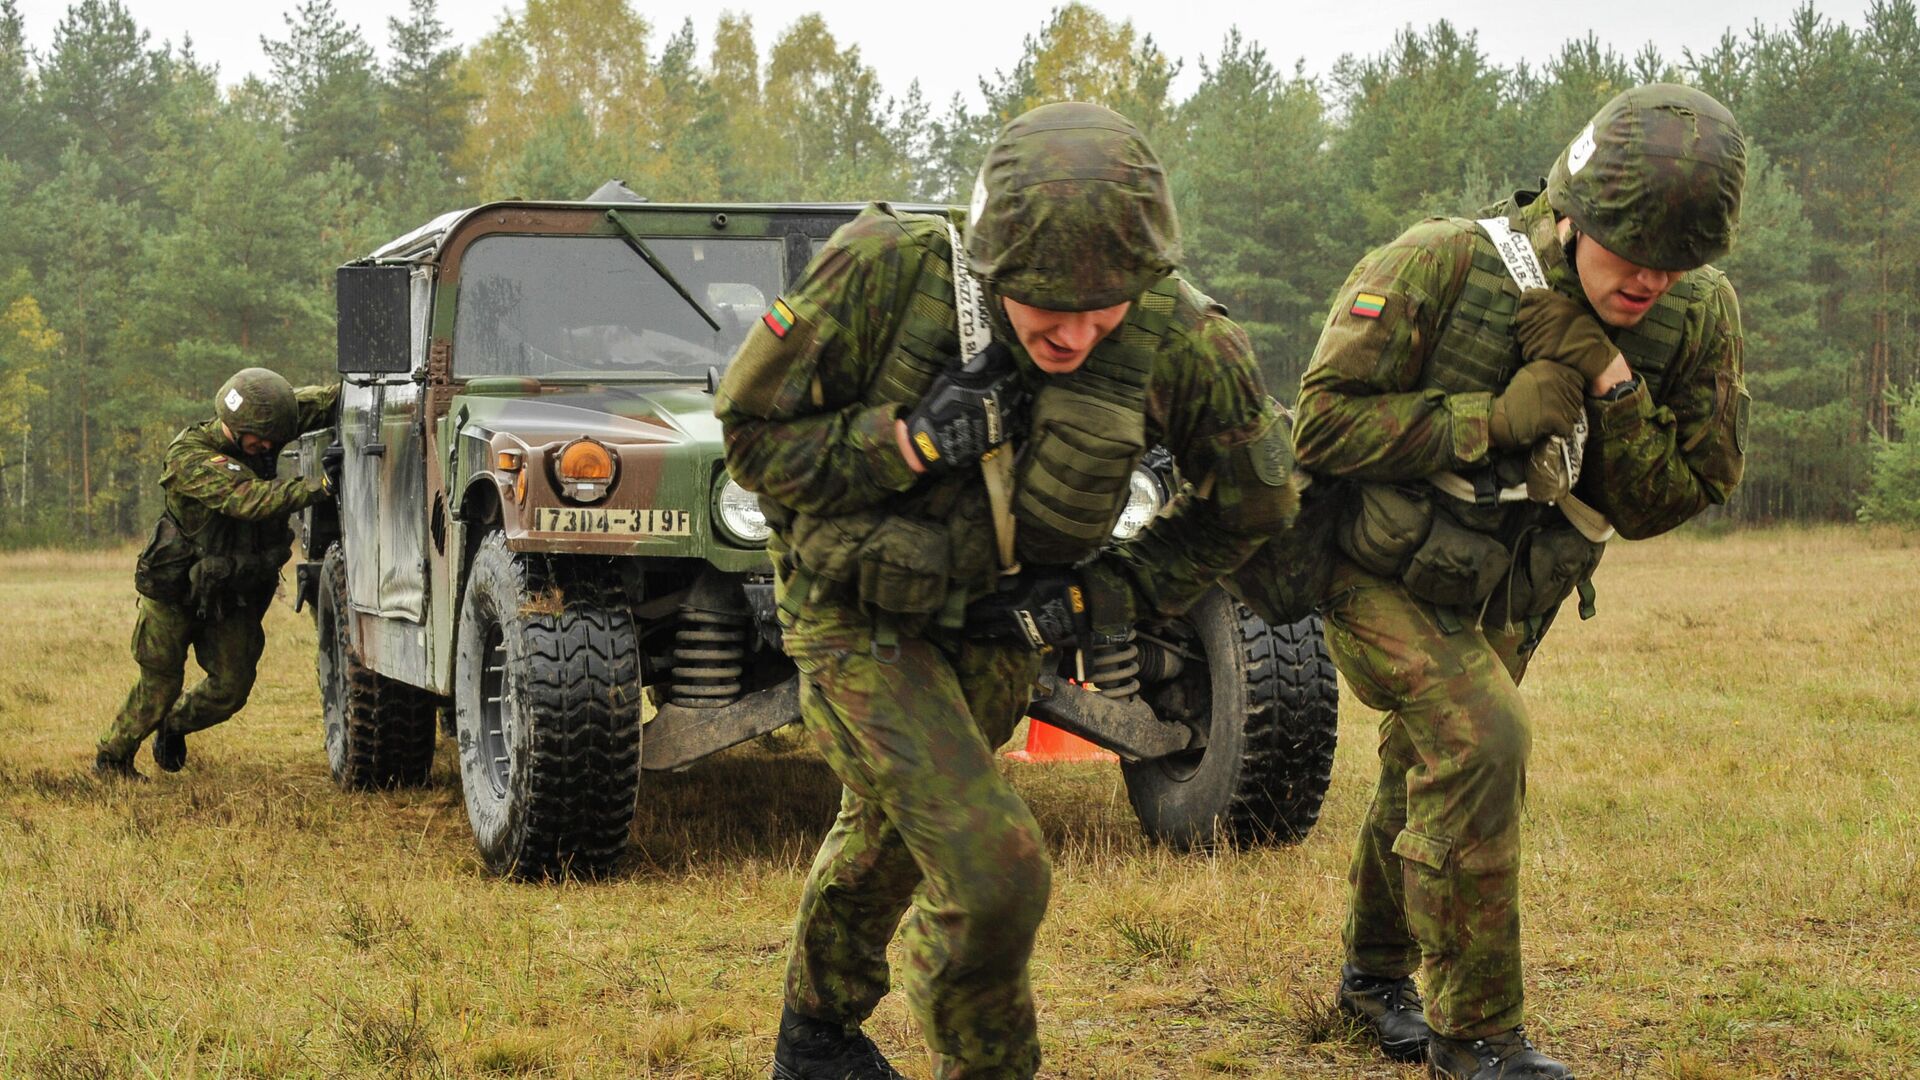 Литовские военные во время учений на полигоне Графенвер, Германия, 20 октября 2015 года - Sputnik Латвия, 1920, 26.09.2021